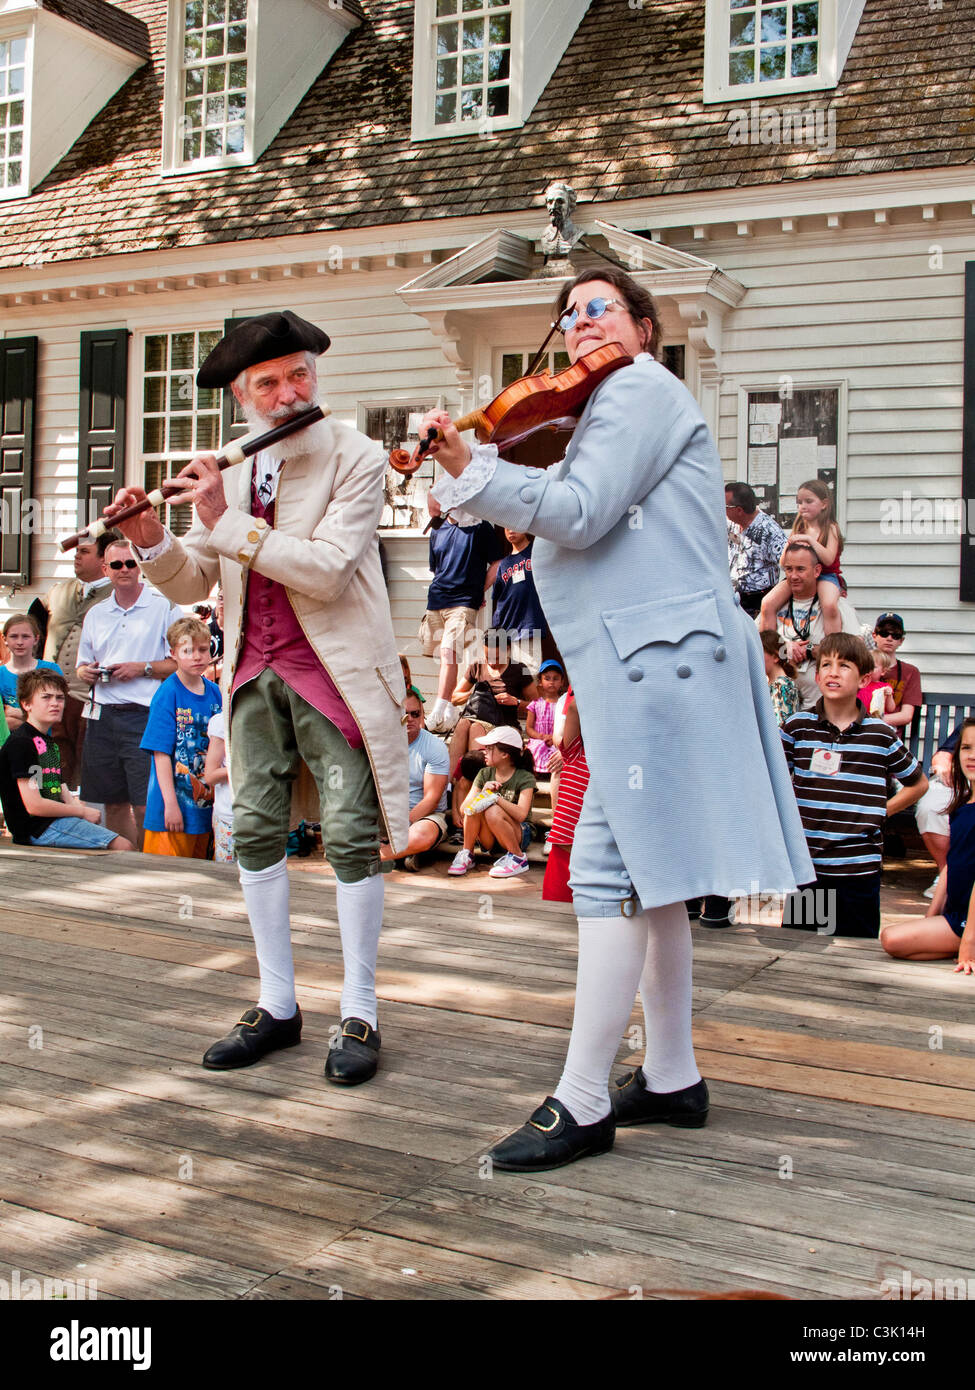 In historischen Kostümen, spielen Musiker Geige und Querflöte außerhalb der Raleigh Tavern in Colonial Williamsburg, VA. Stockfoto